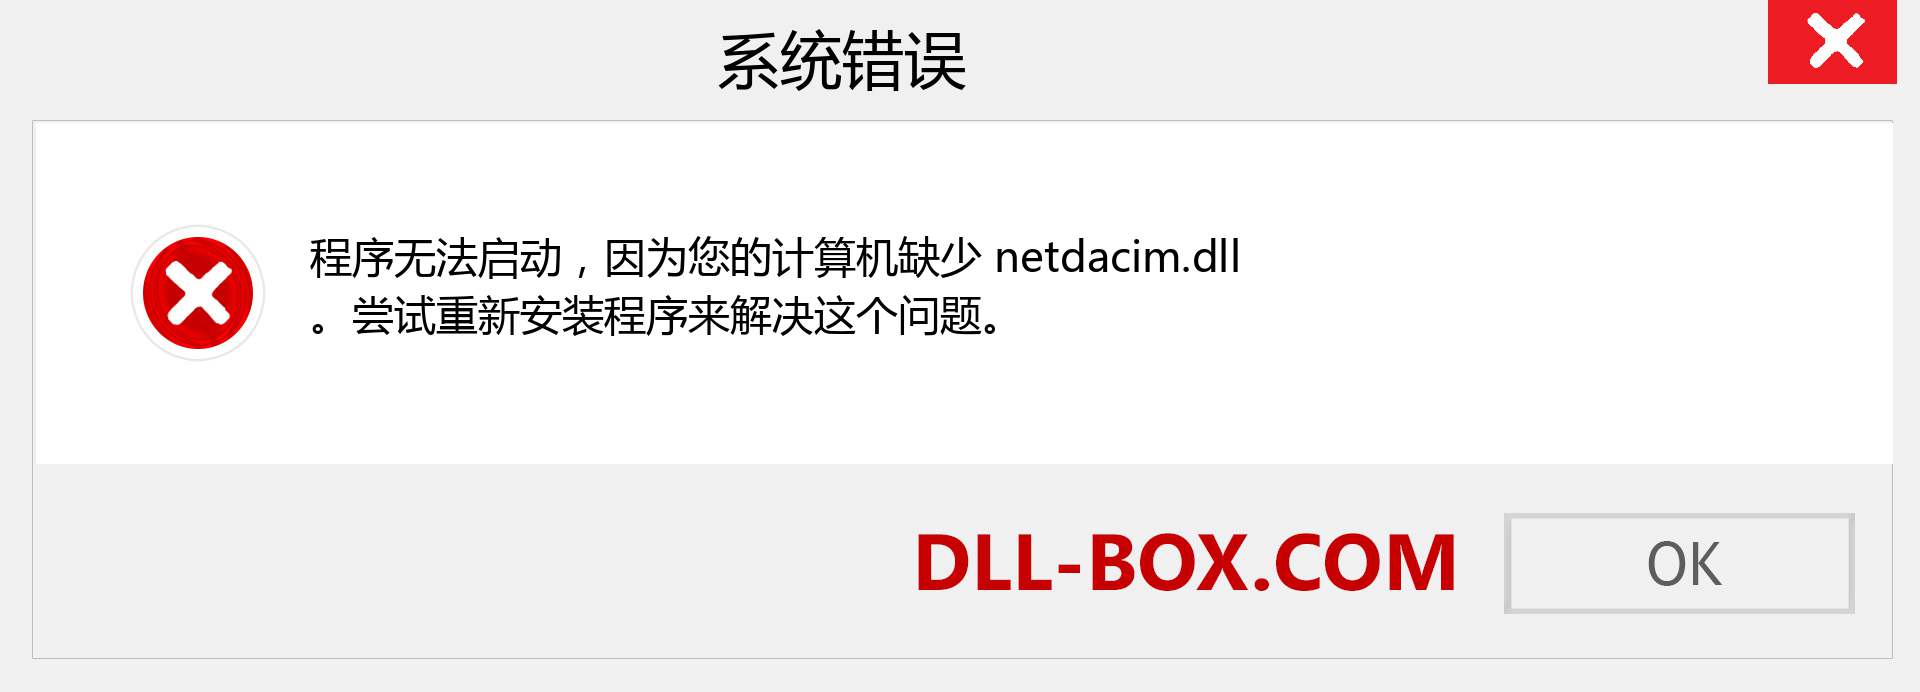 netdacim.dll 文件丢失？。 适用于 Windows 7、8、10 的下载 - 修复 Windows、照片、图像上的 netdacim dll 丢失错误